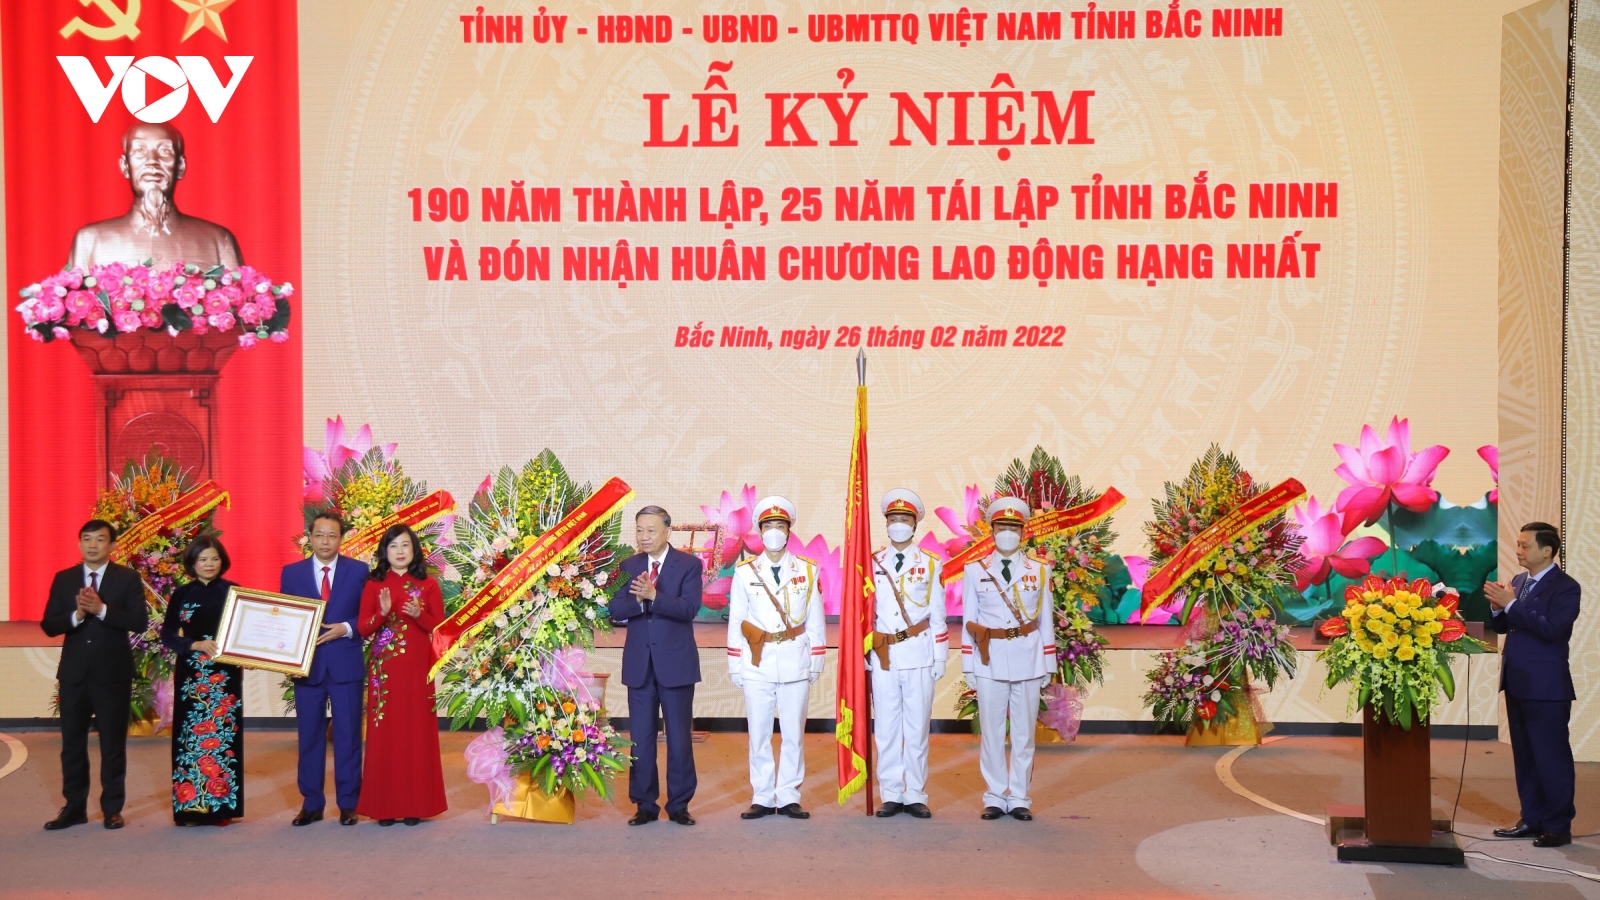 Kỷ niệm 190 năm thành lập và 25 năm tái lập tỉnh Bắc Ninh với chủ đề văn hiến và khát vọng